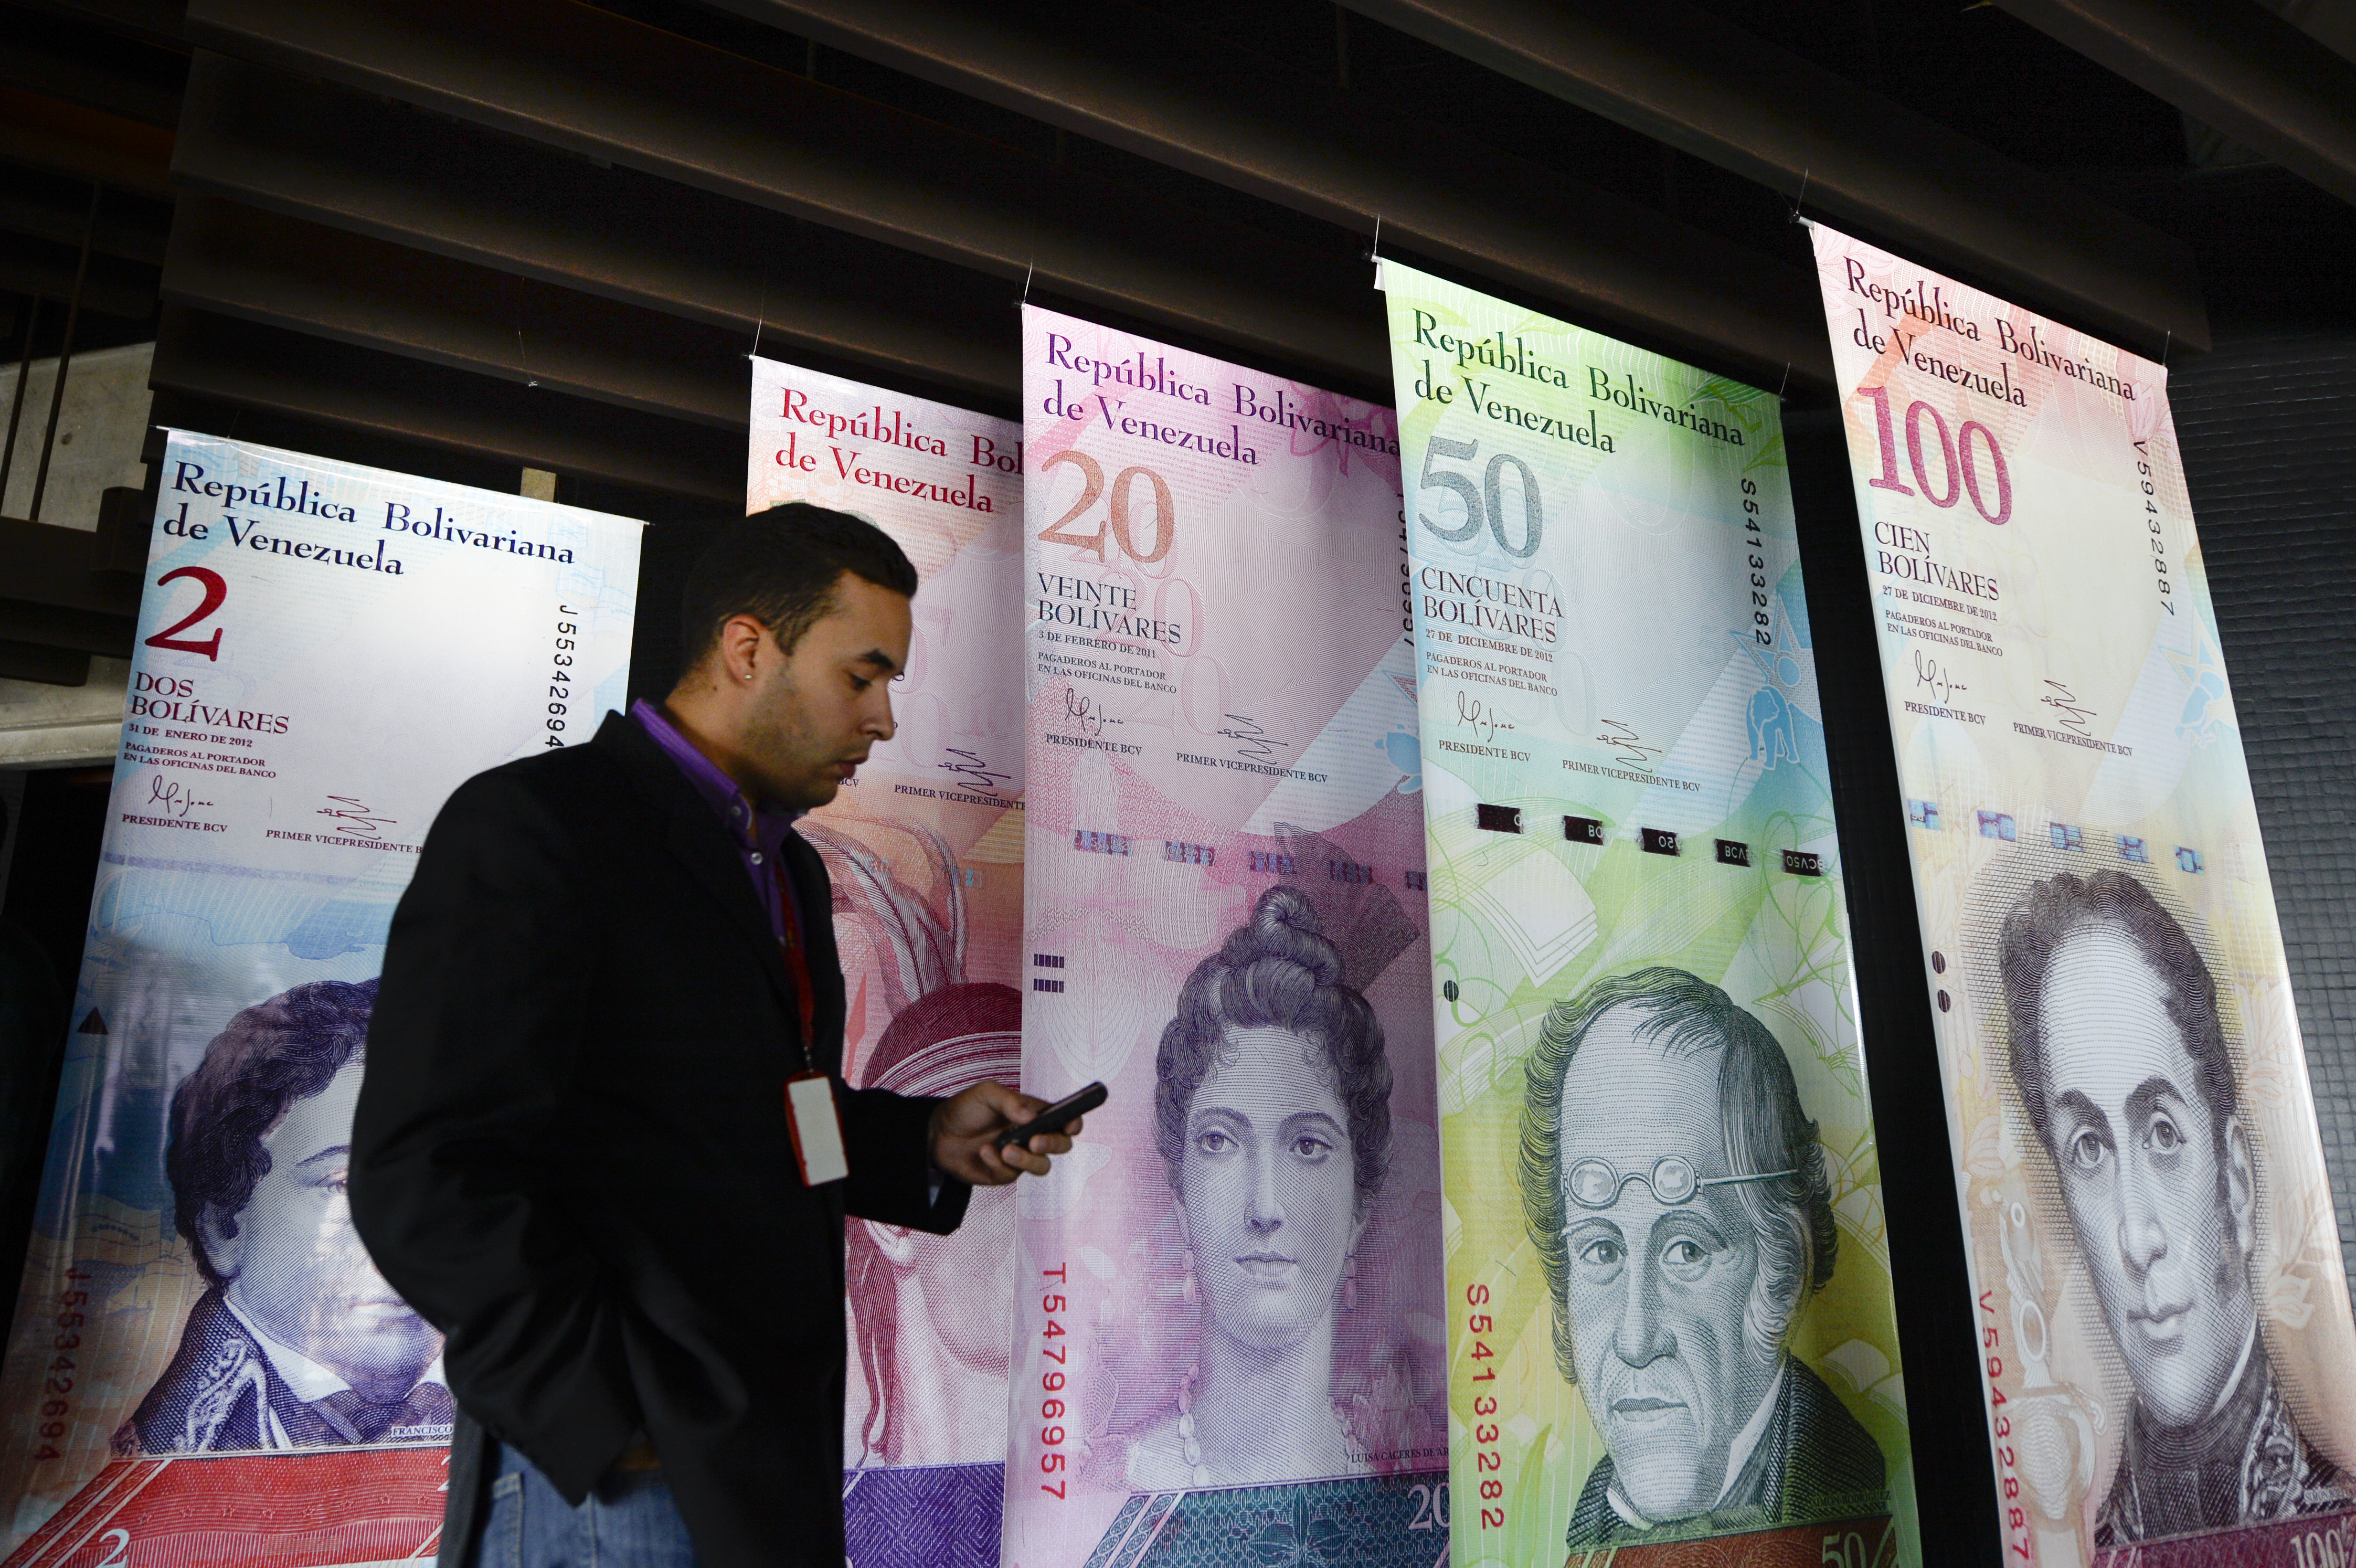 December hetedikén az elnök bevonatta a 3000 forintot érő 100 boliváros bankjegyet, hogy a készpénzt halmozók dolgát megnehezítse. Az ország közben készül a tíz- és húszezer boliváros kibocsátására, hogy beérje az inflációt